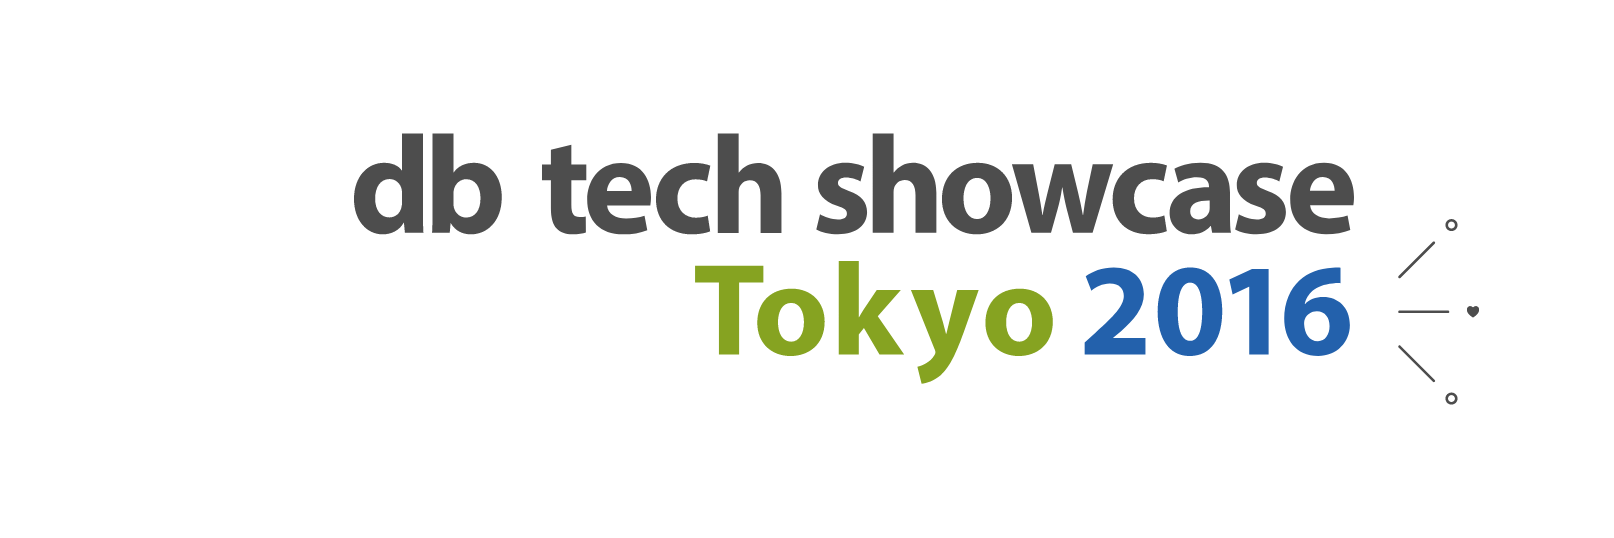 db tech showcase Tokyo 2016